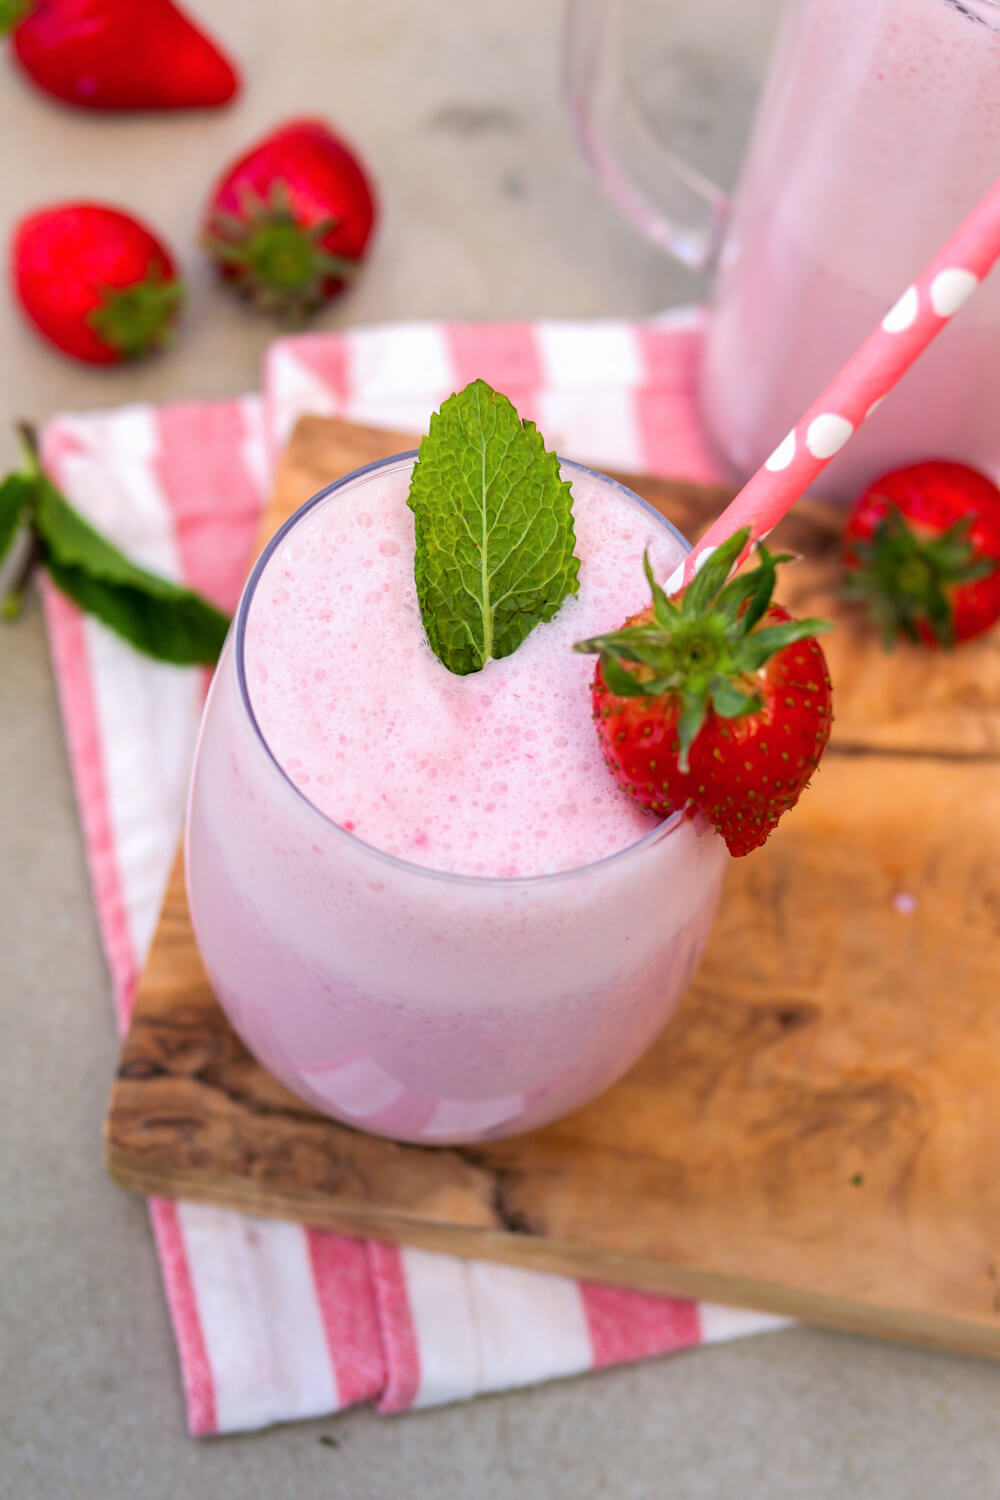 Erdbeer-Milchshake mit Minzblättchen, Erdbeere und Strohhalm in einem Glas auf einem Holzbrett.